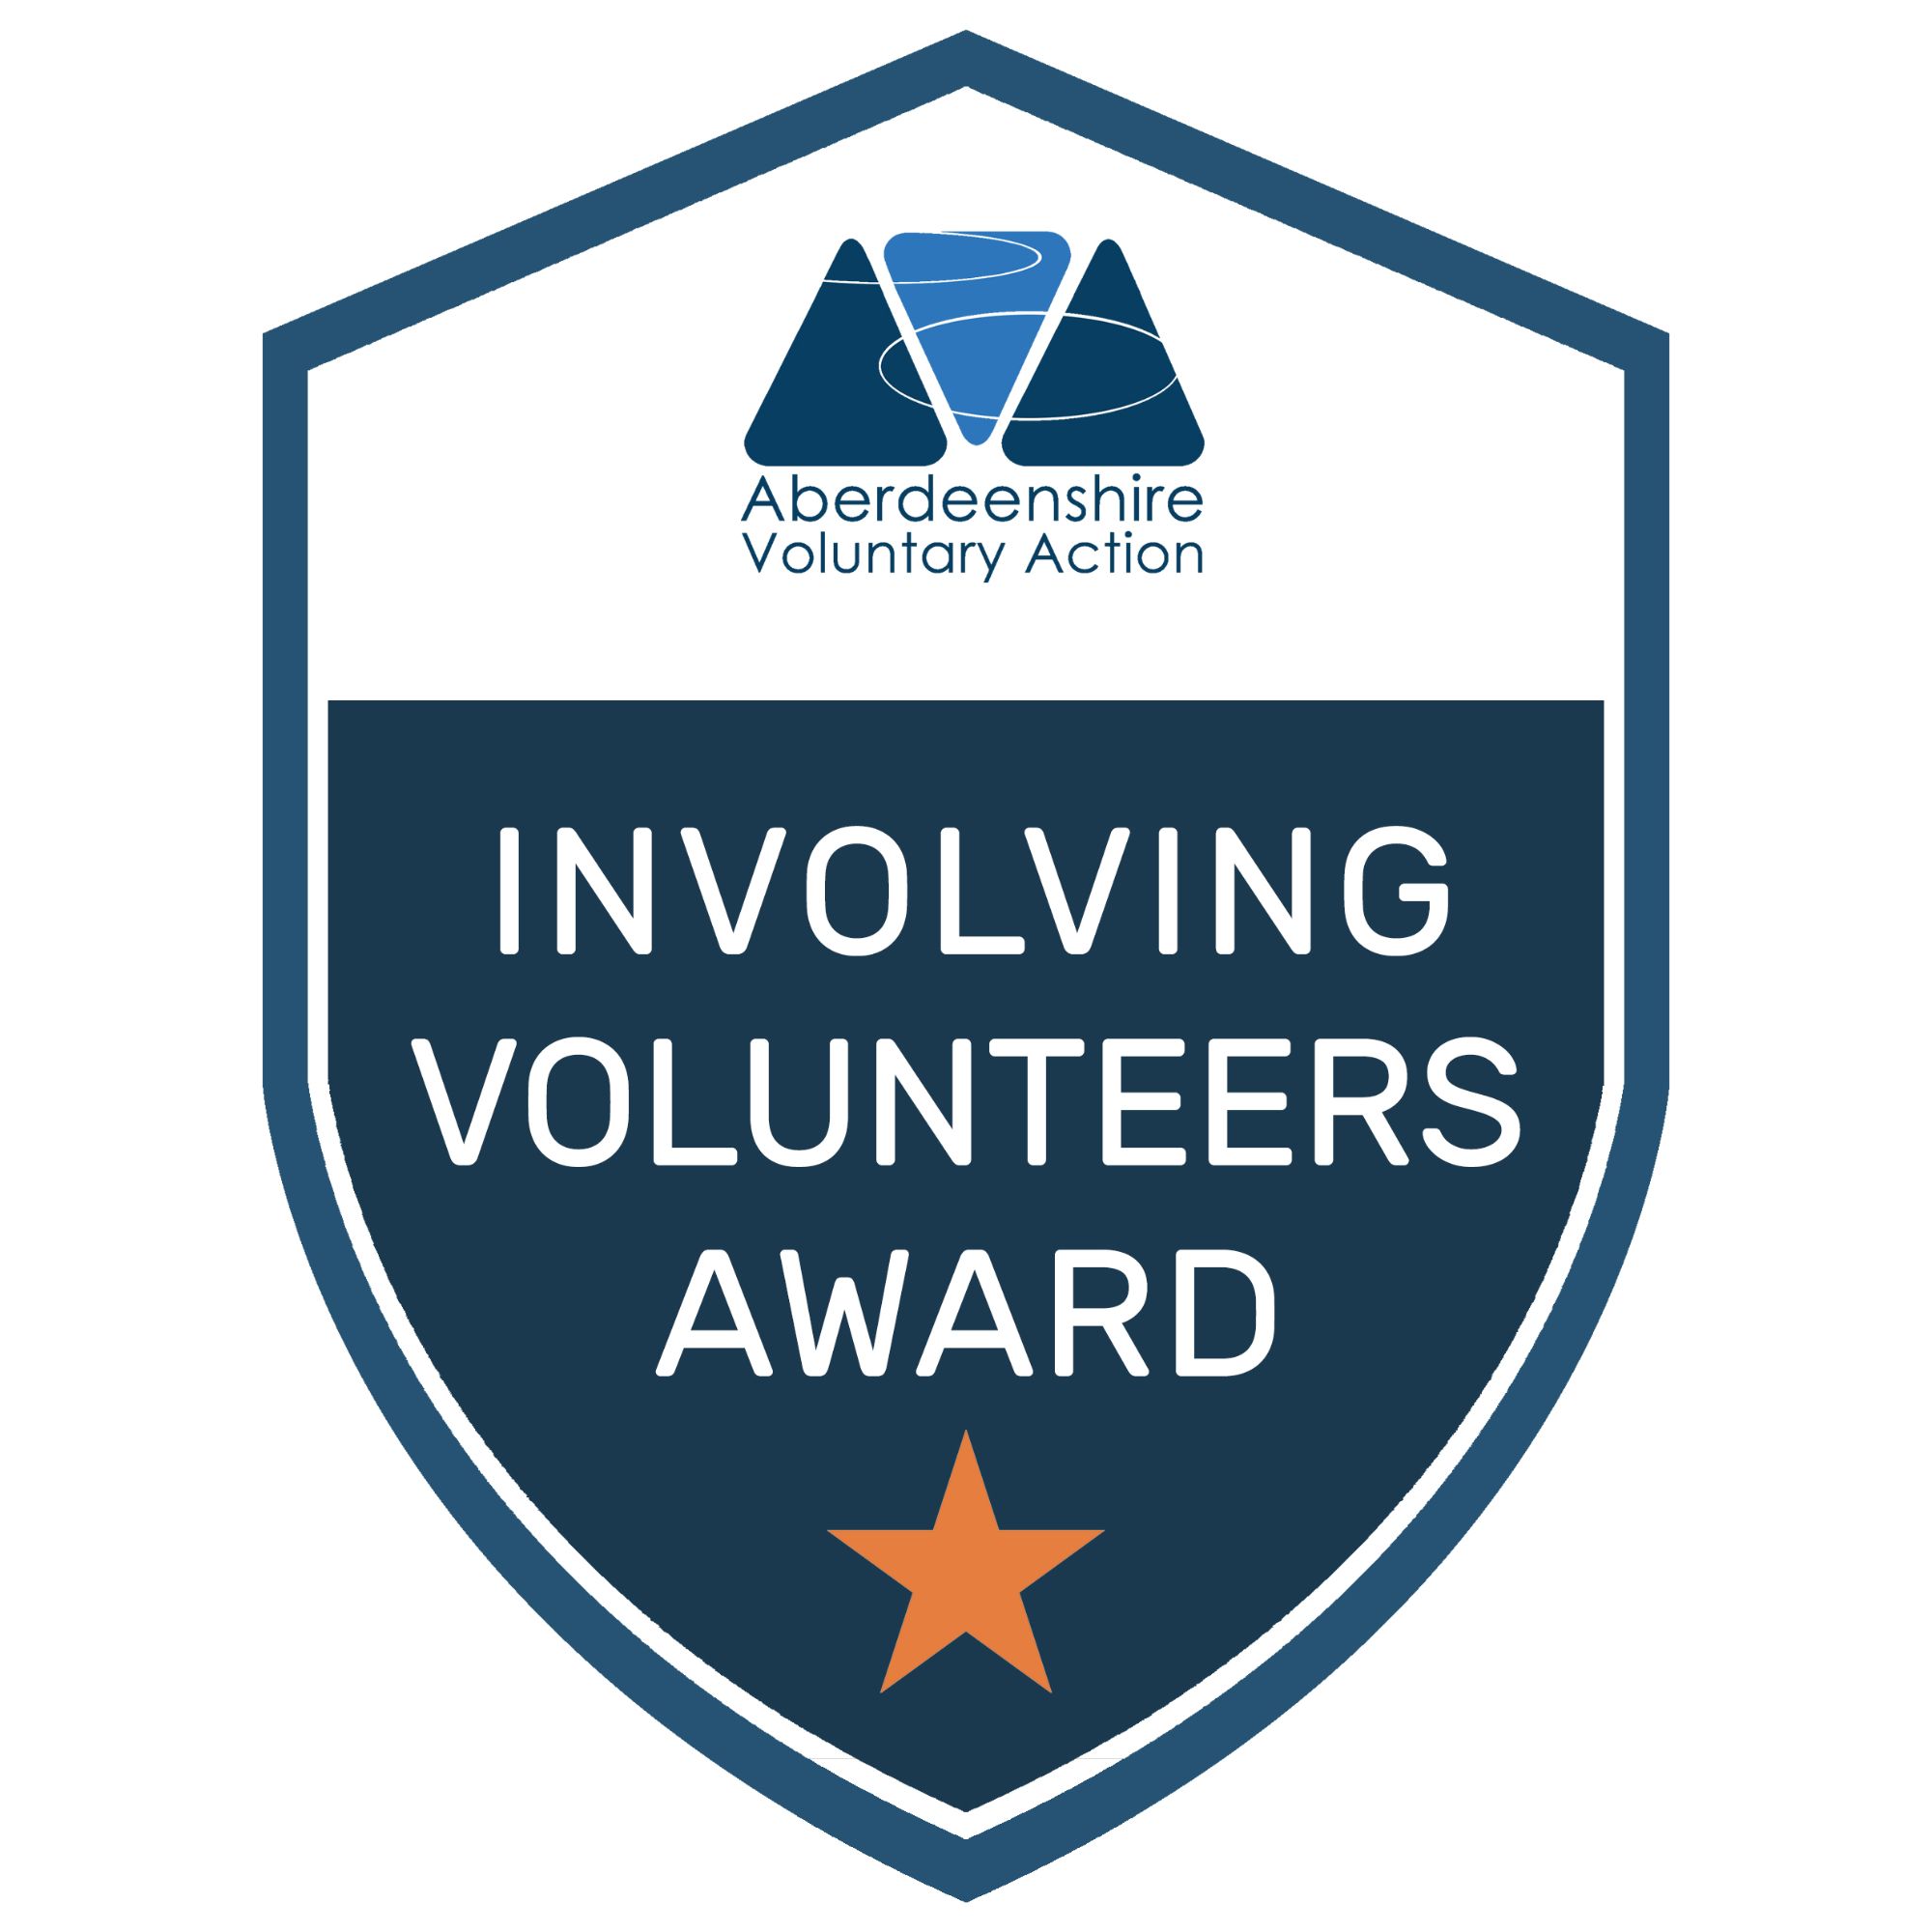 AVA Involving Volunteers Award logo